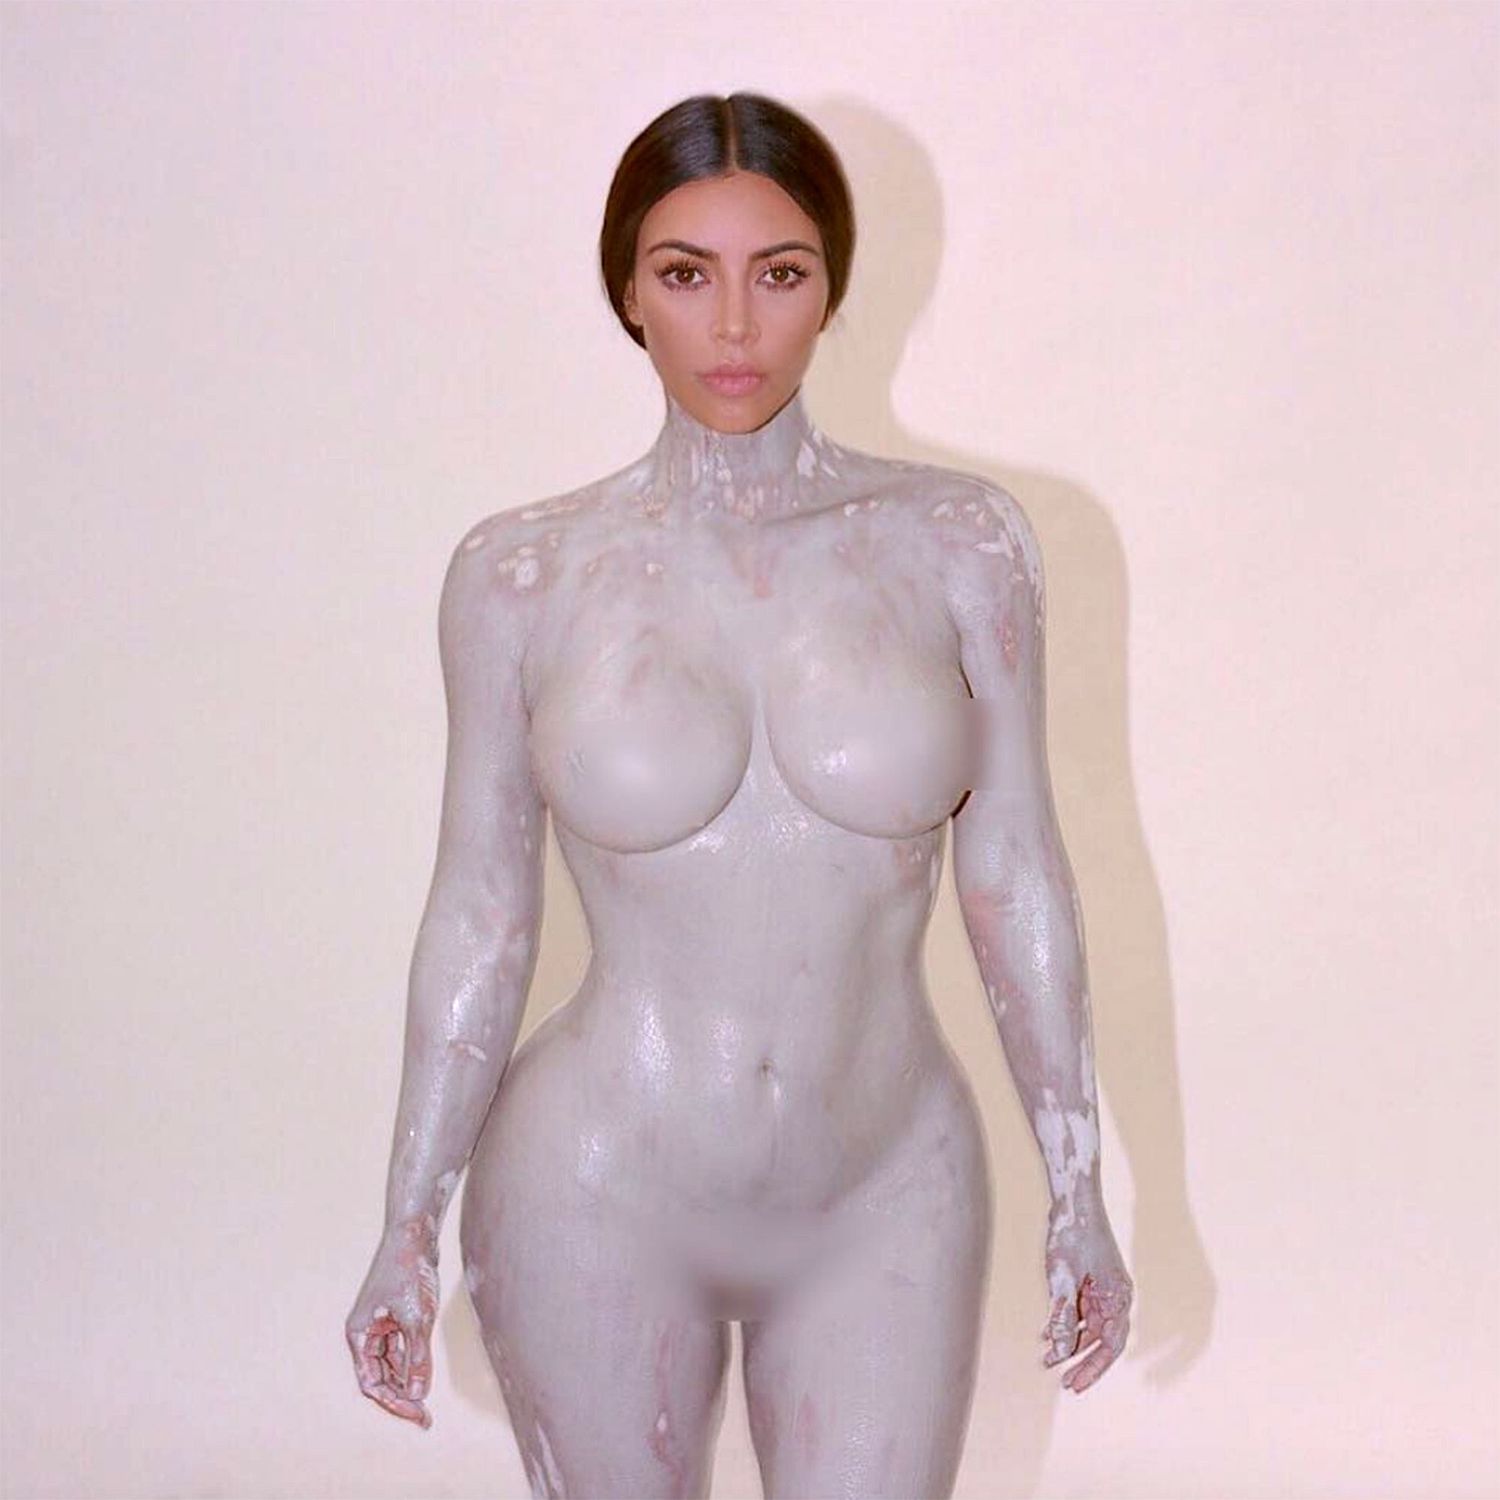 alex gonopolskiy recommends Sexy Kim Kardashian Nude